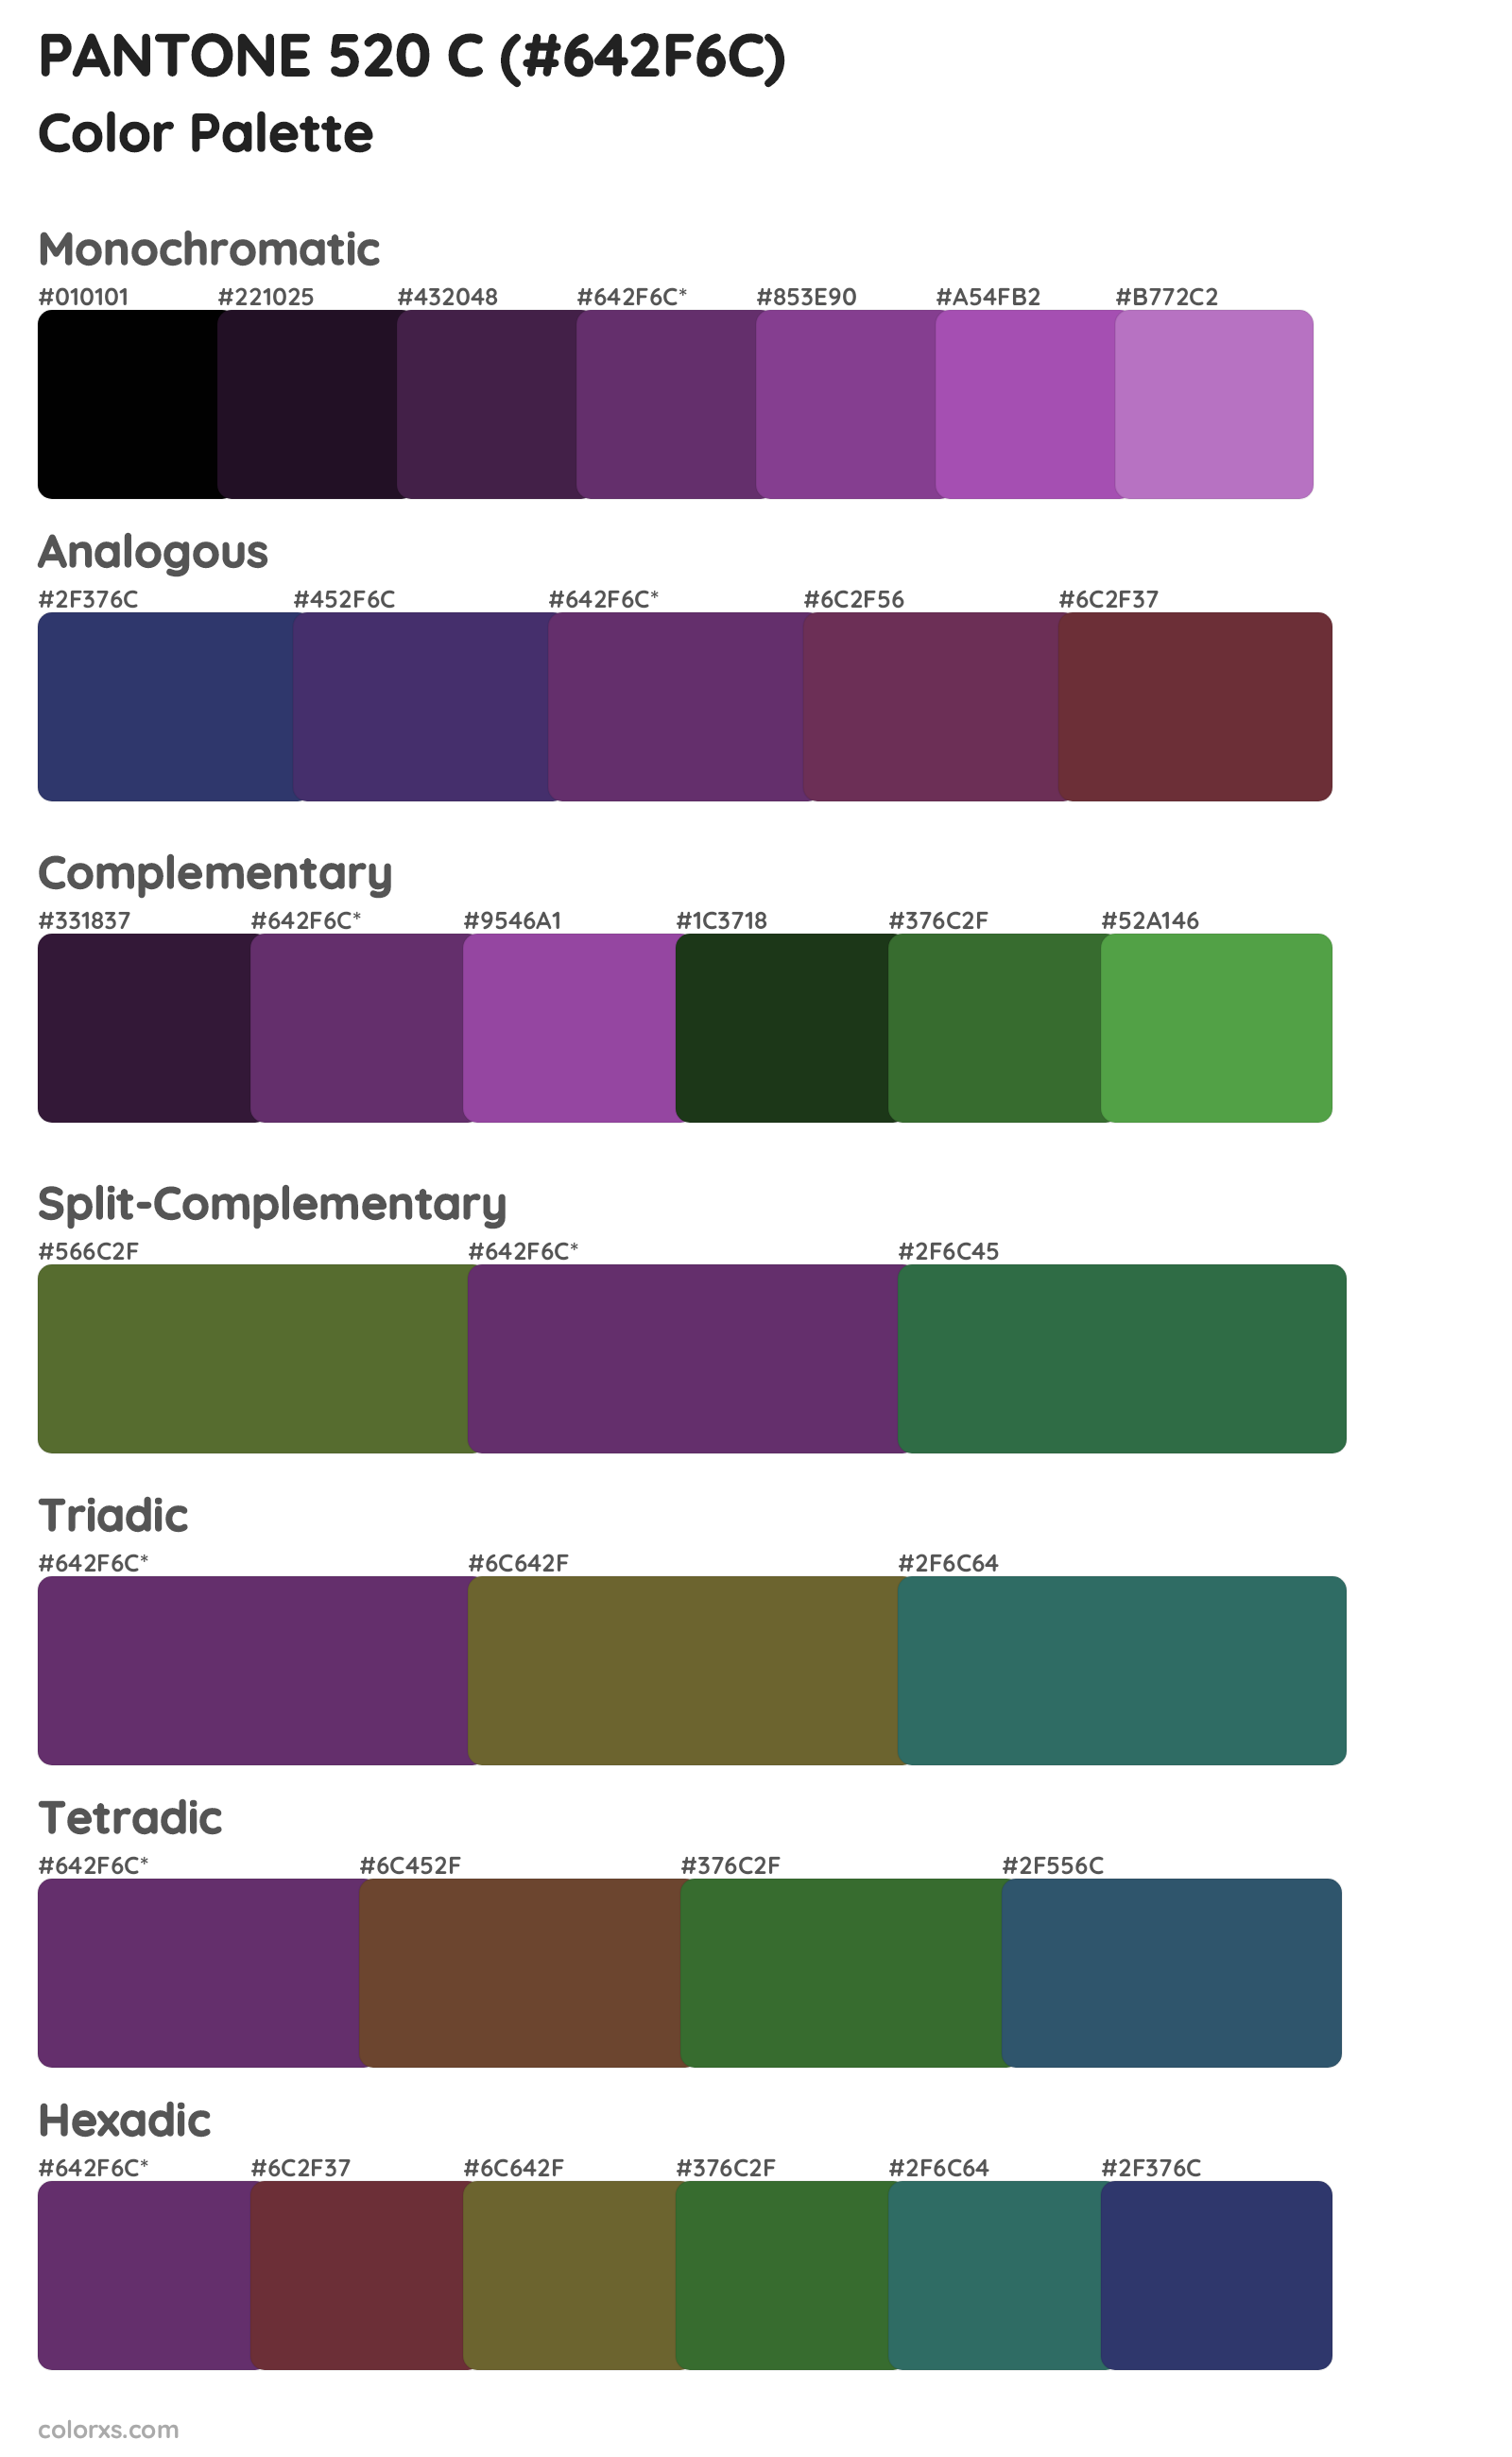 PANTONE 520 C Color Scheme Palettes